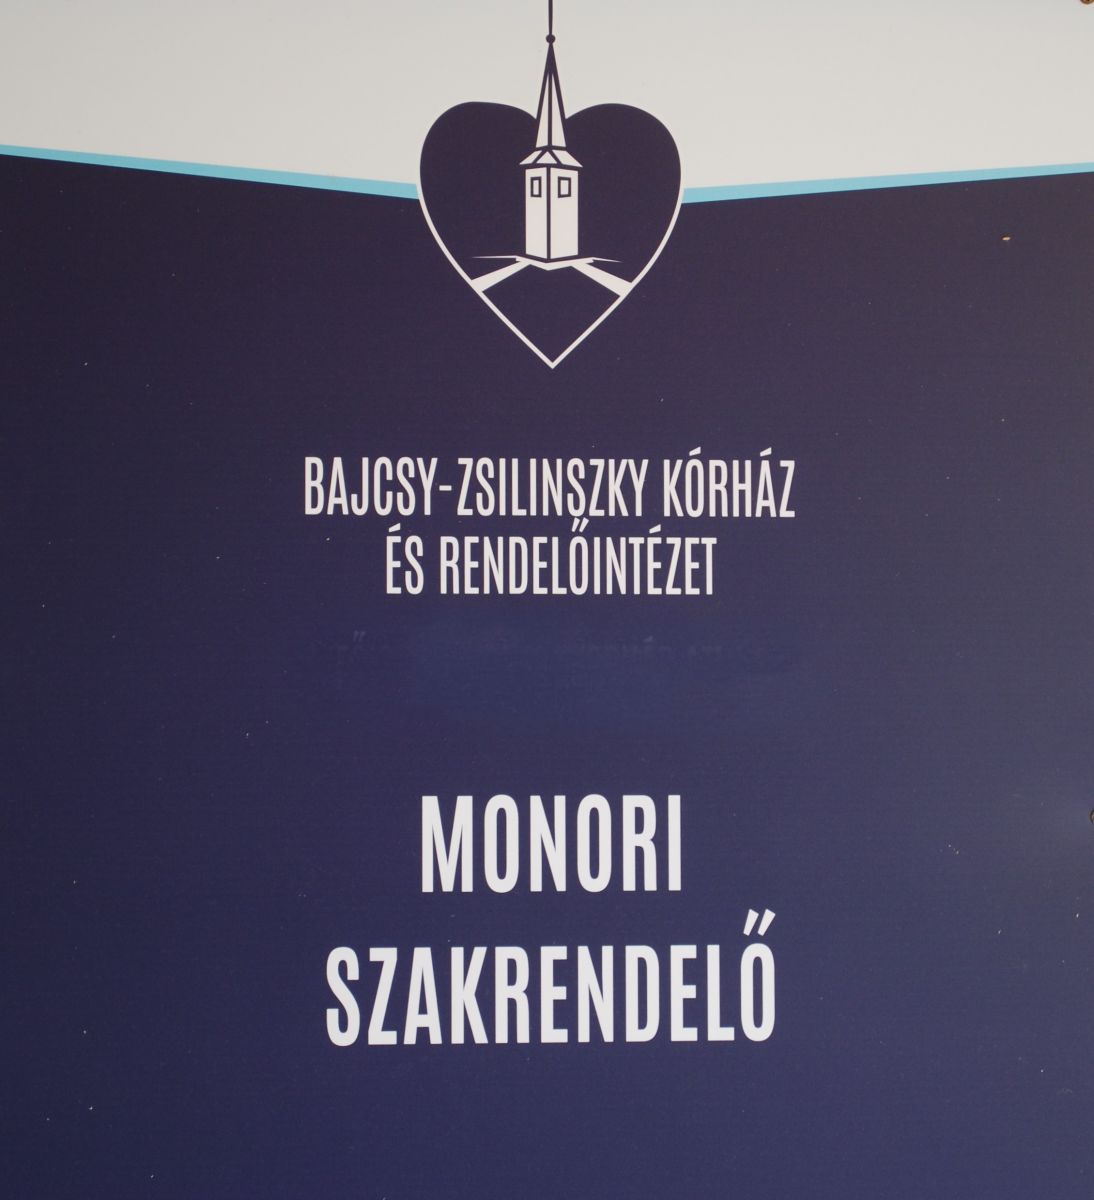 Bajcsy-Zsilinszky Kórház és Rendelőintézet monori Szakorvosi Rendelőintézet tájékoztatása